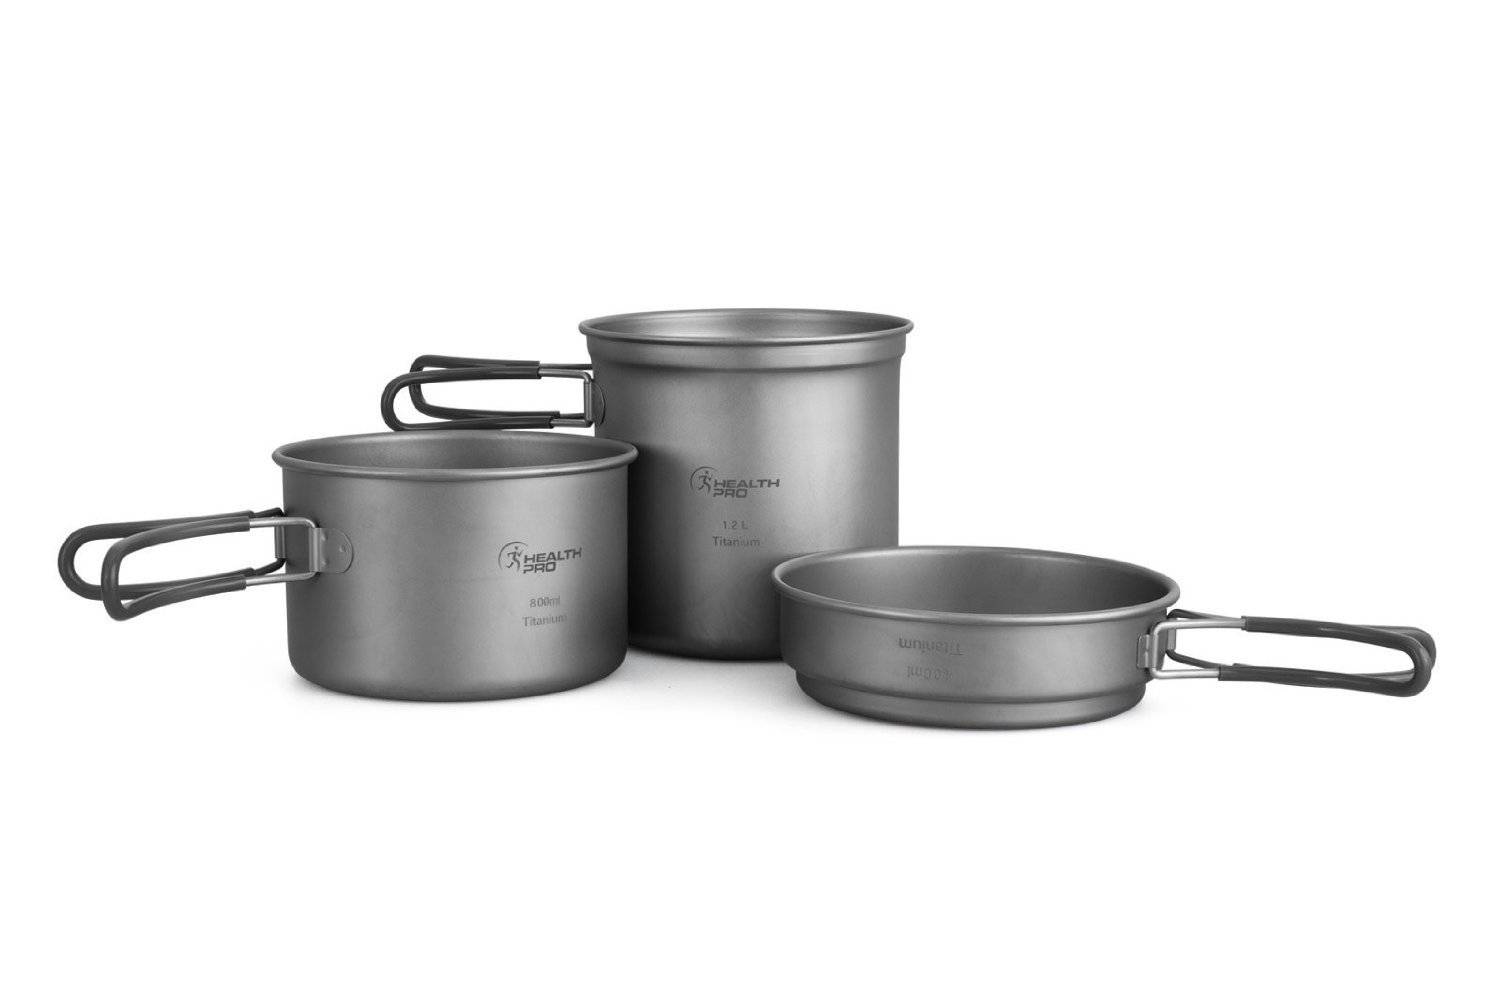 Titanium Lightweight 3-Piece Pot and Pan Camping Mess Kit Cookware Set